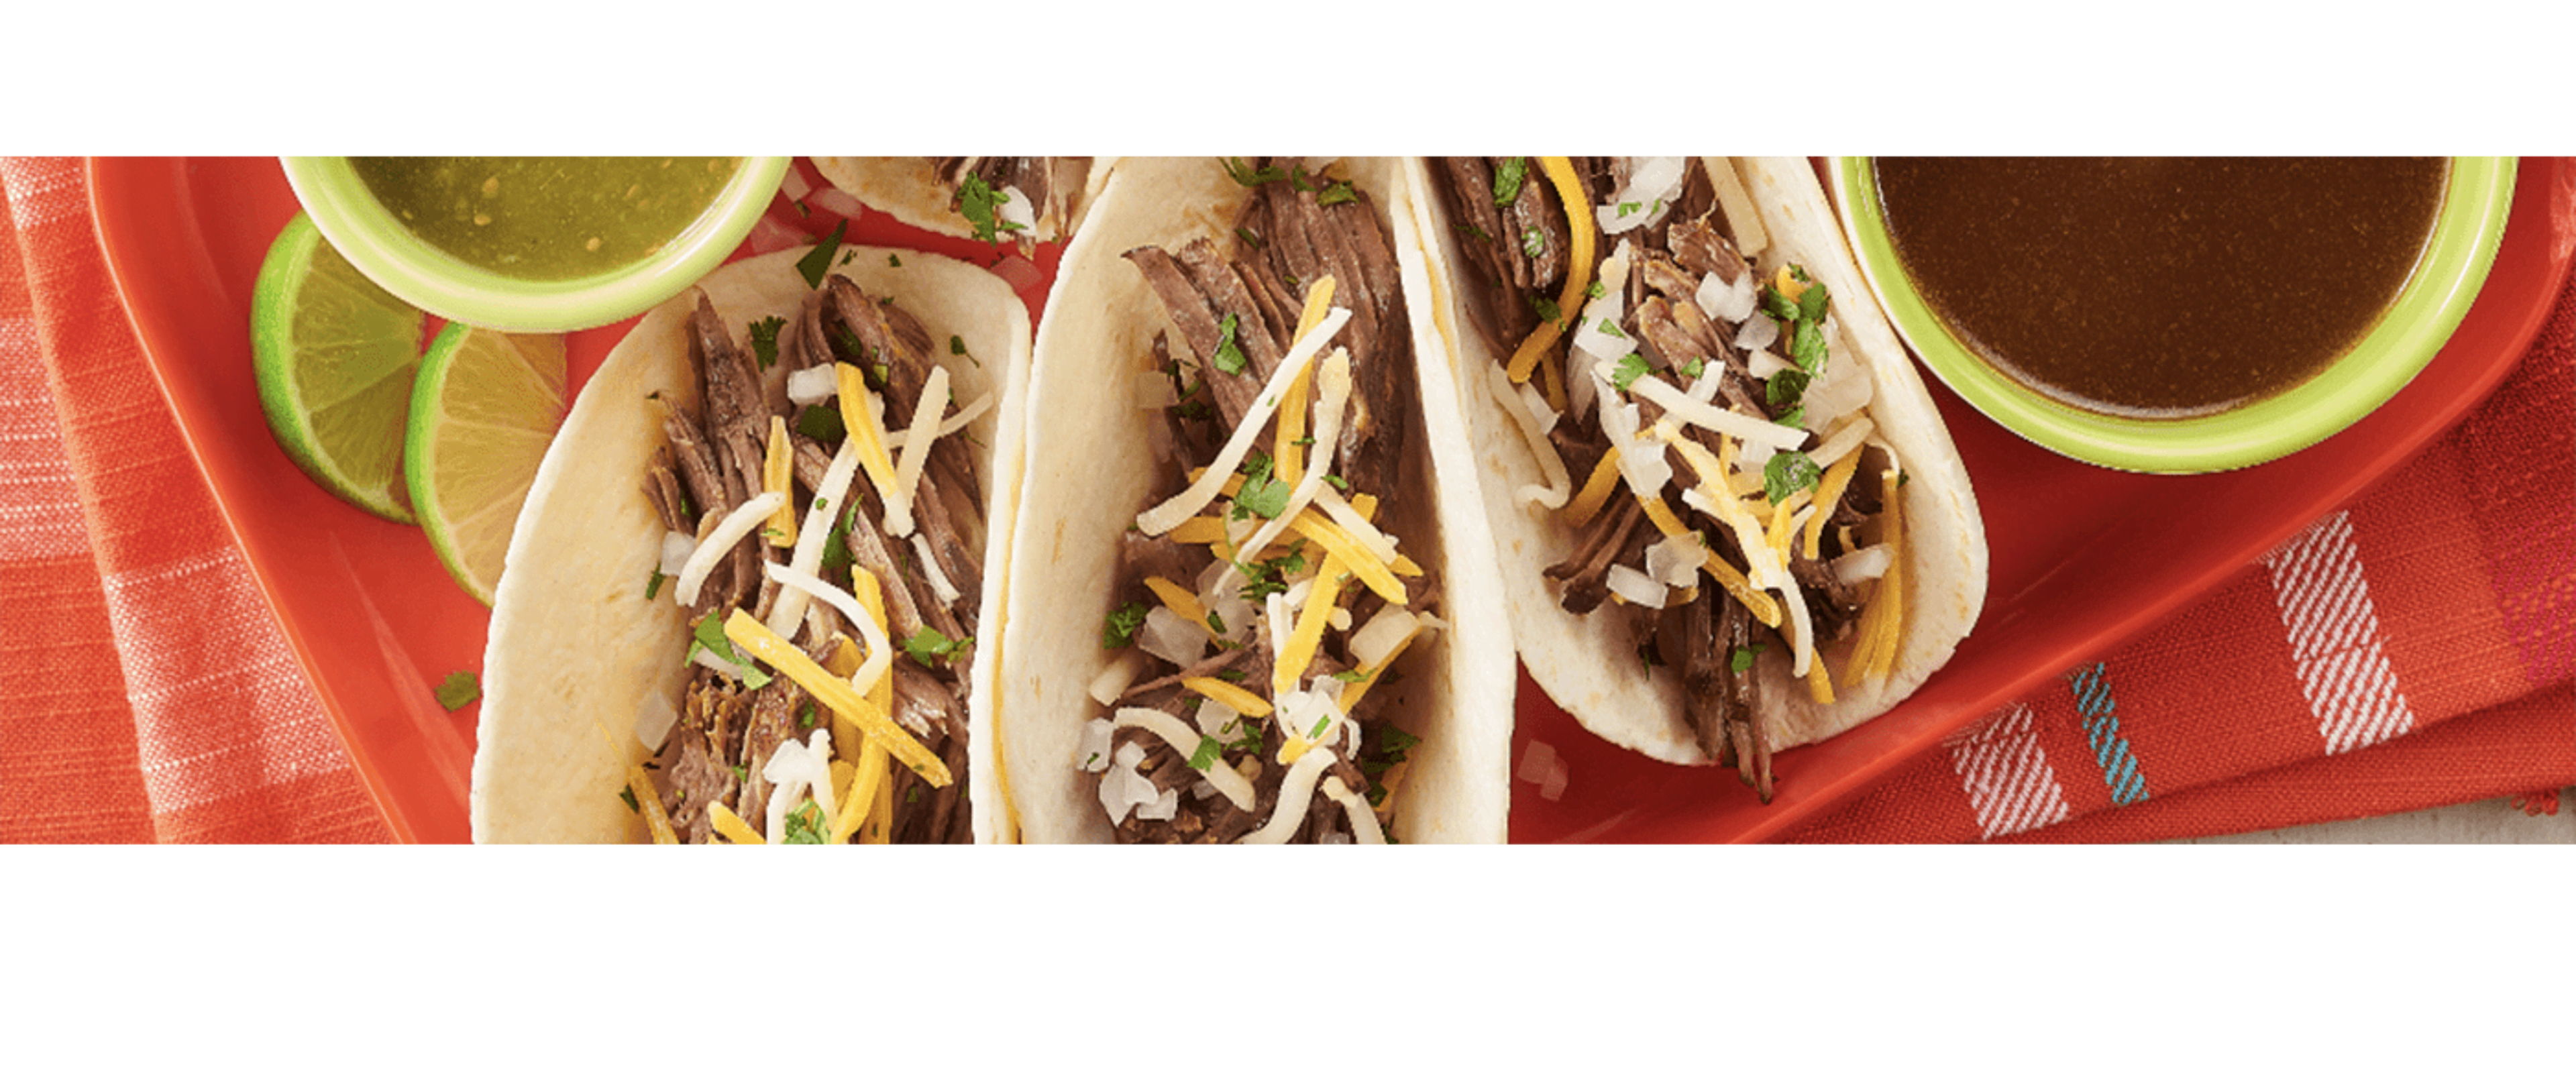 Classic Beef Tacos - Mexican Recipes - Old El Paso